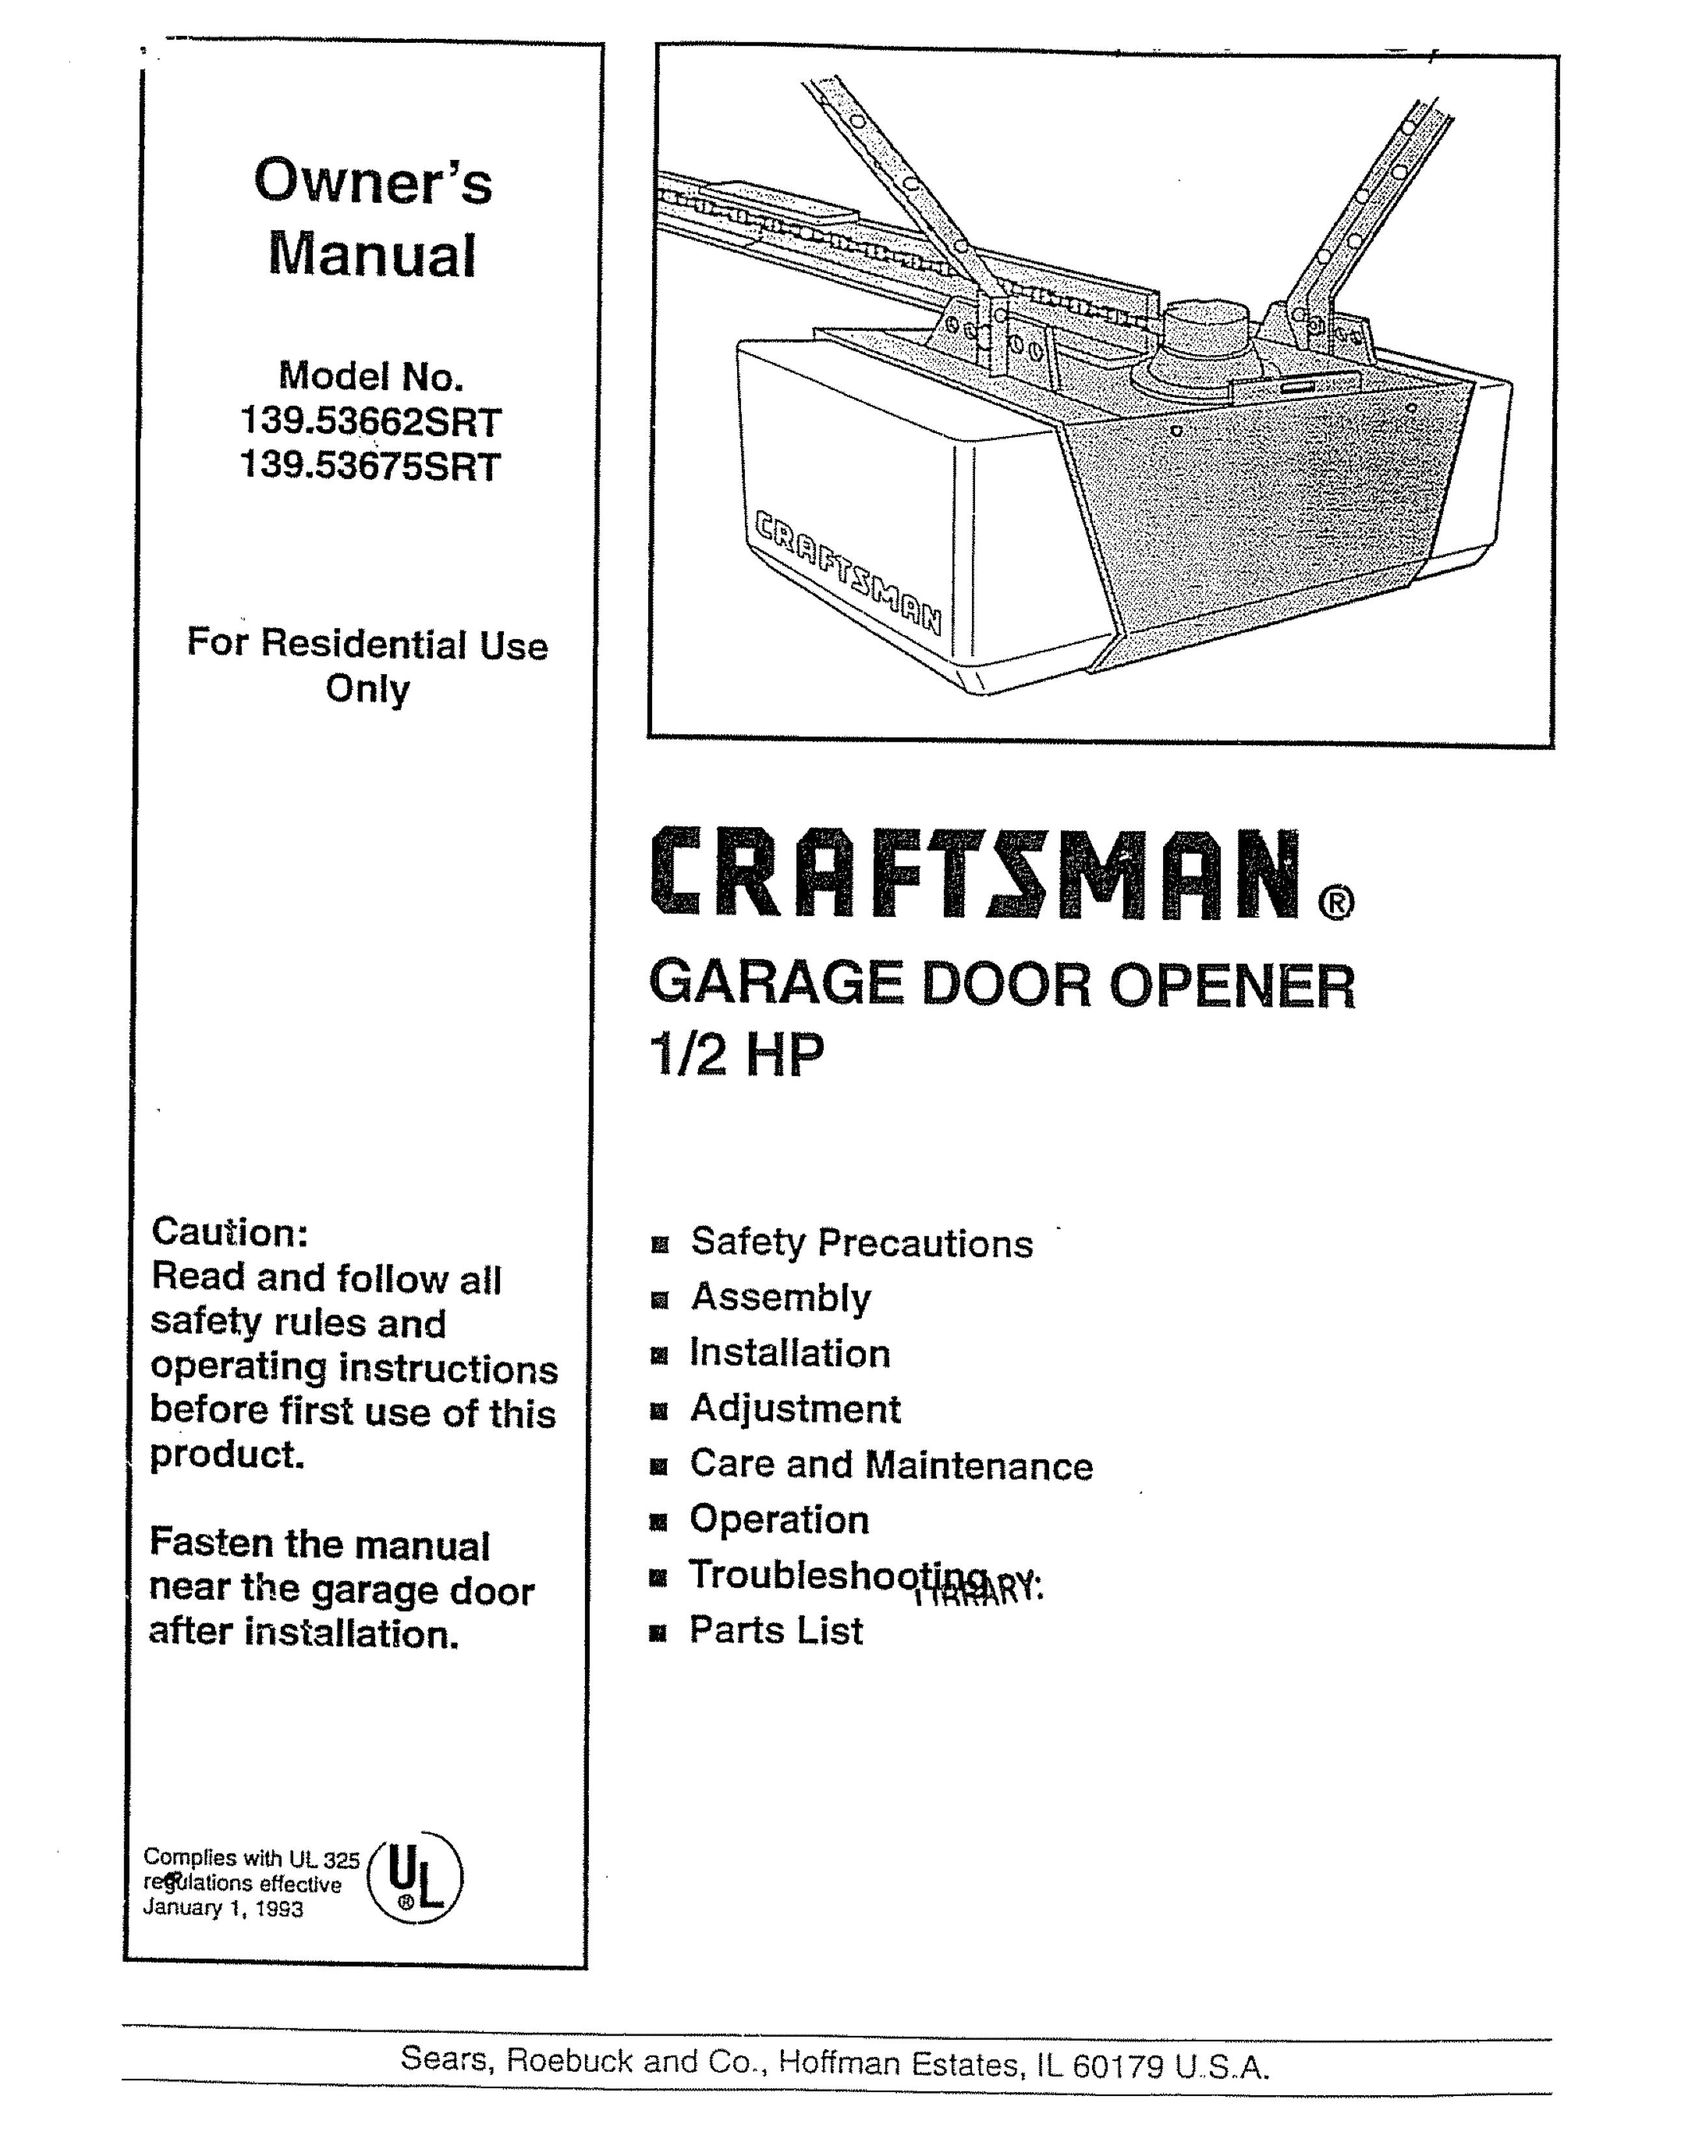 Craftsman 139.53675SRT Garage Door Opener User Manual